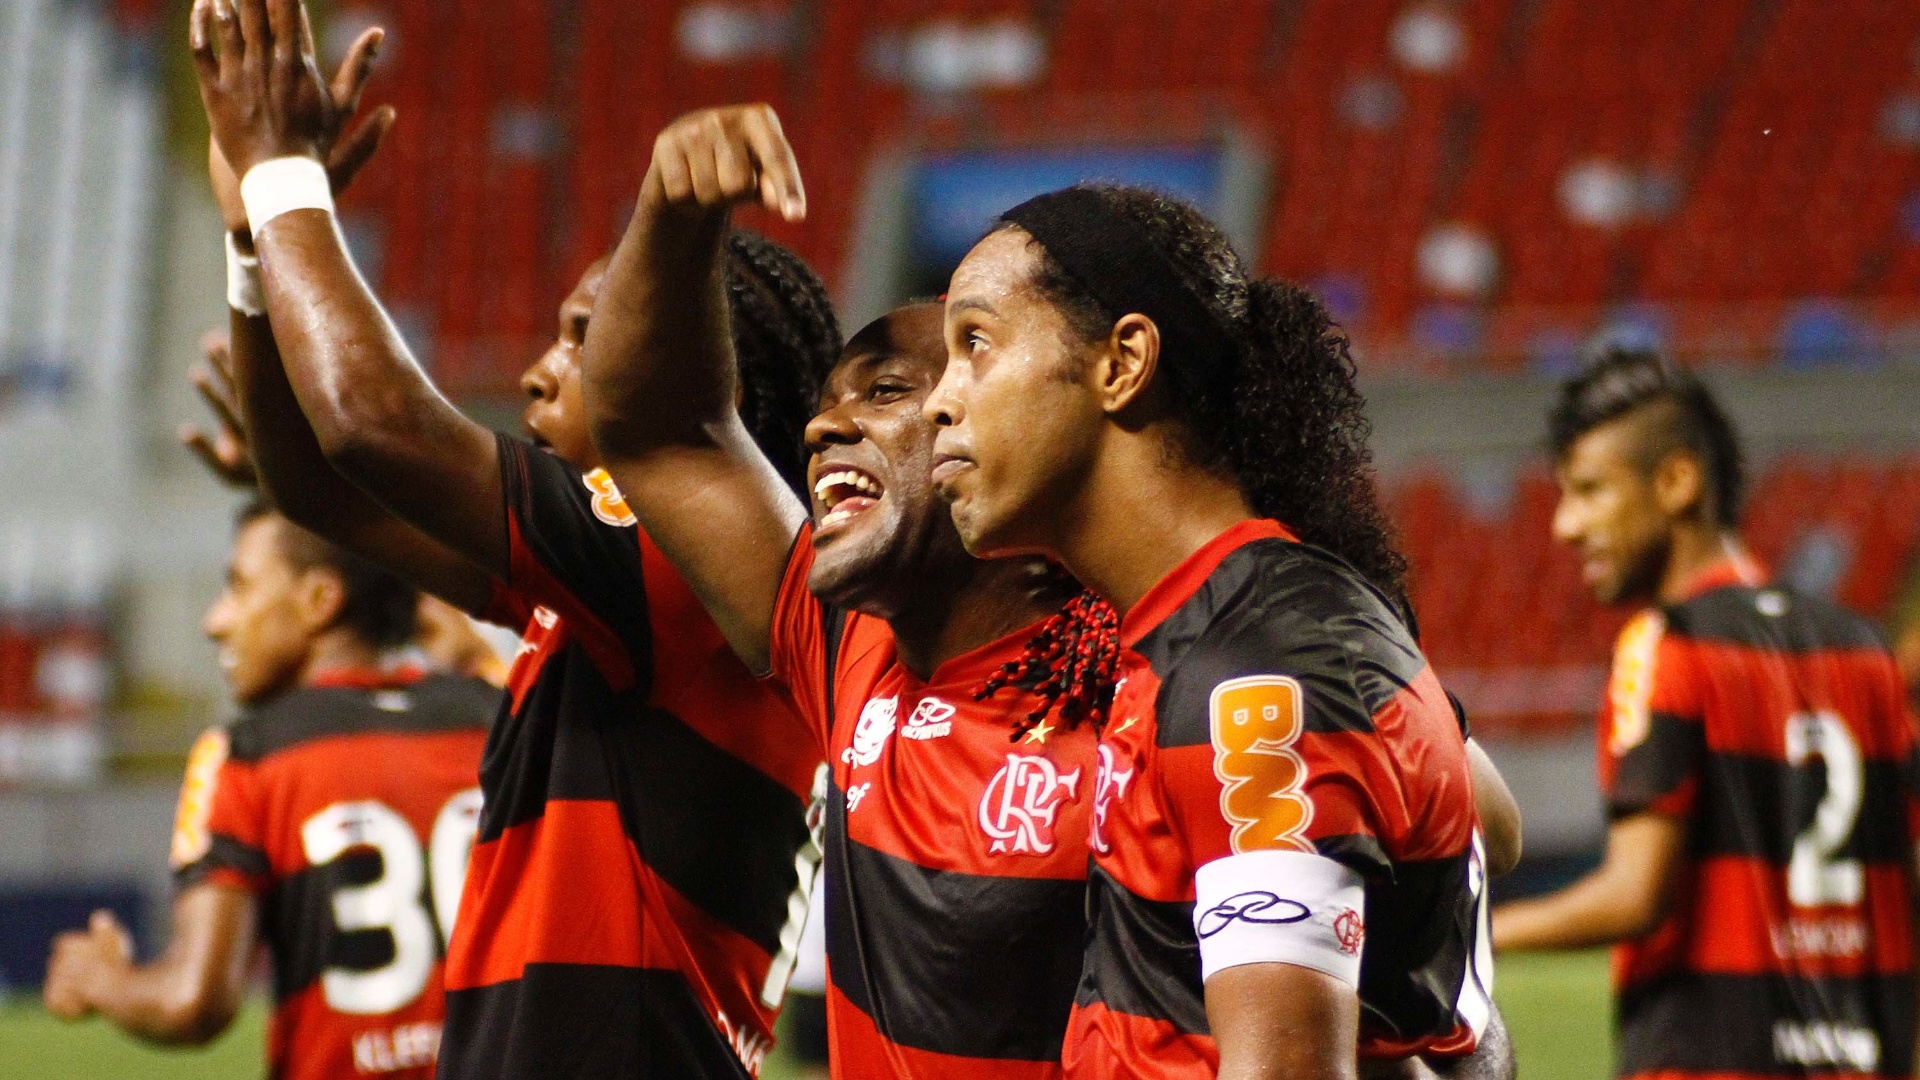 Atacante Vágner Love aponta para o companheiro Ronaldinho Gaúcho, autor do gol que deu a vitória ao Flamengo no clássico com o Vasco